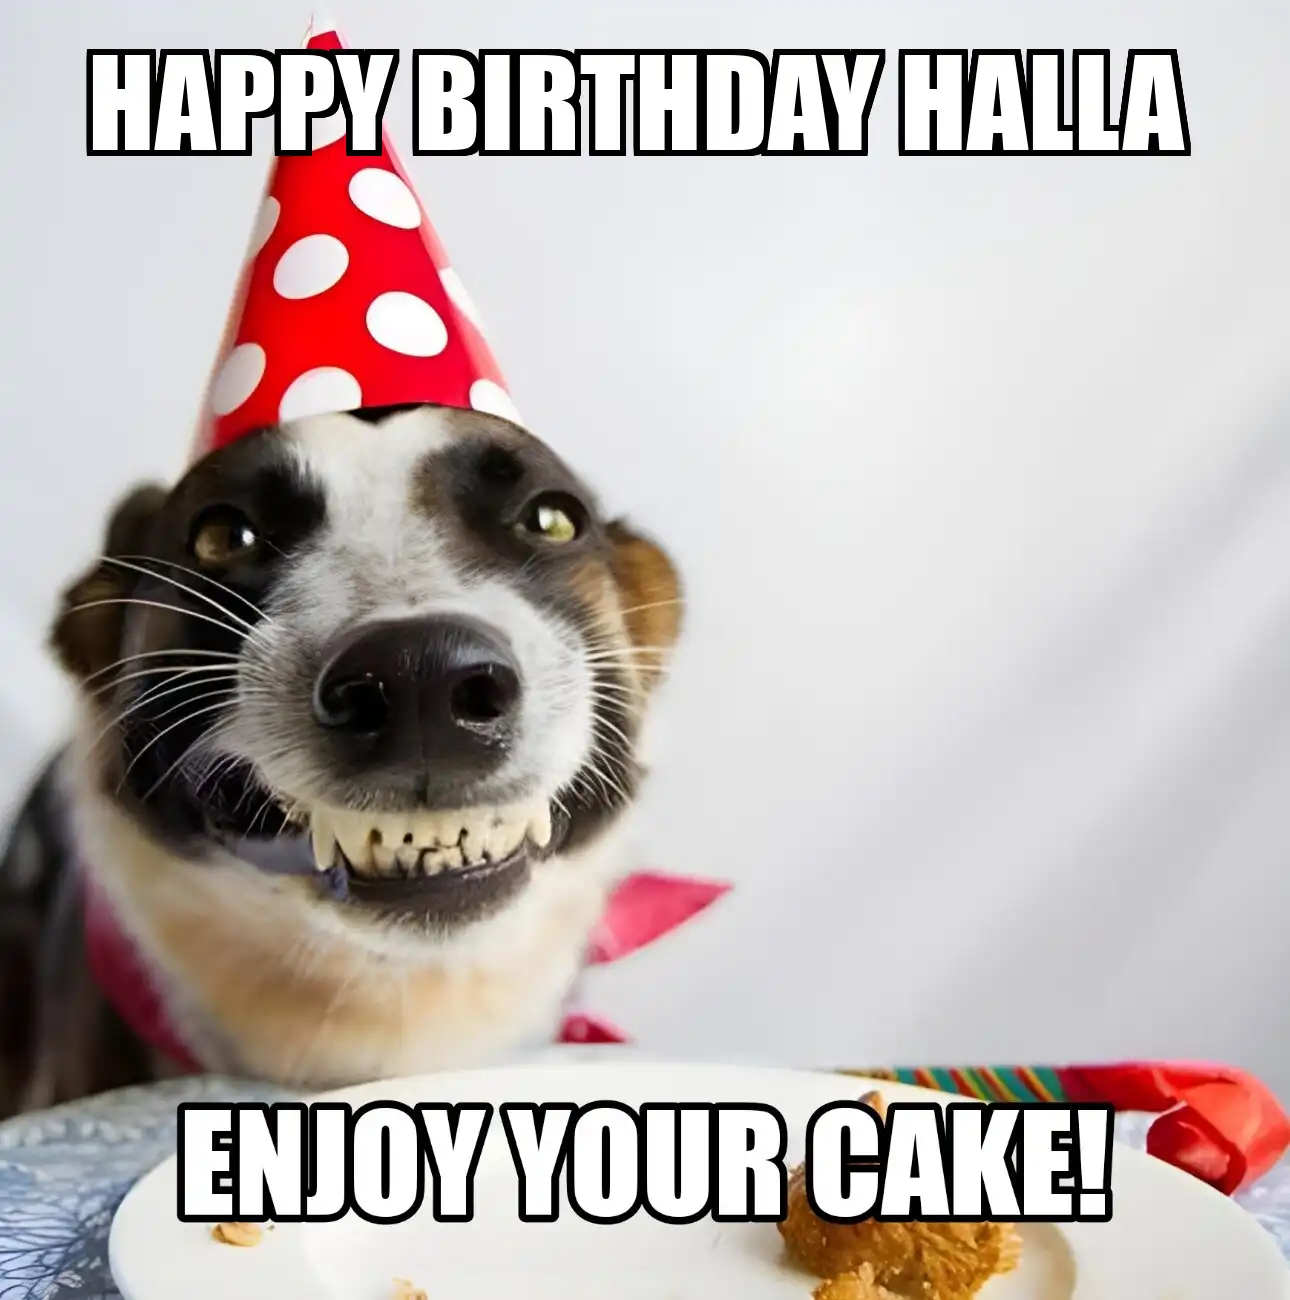 Happy Birthday Halla Enjoy Your Cake Dog Meme